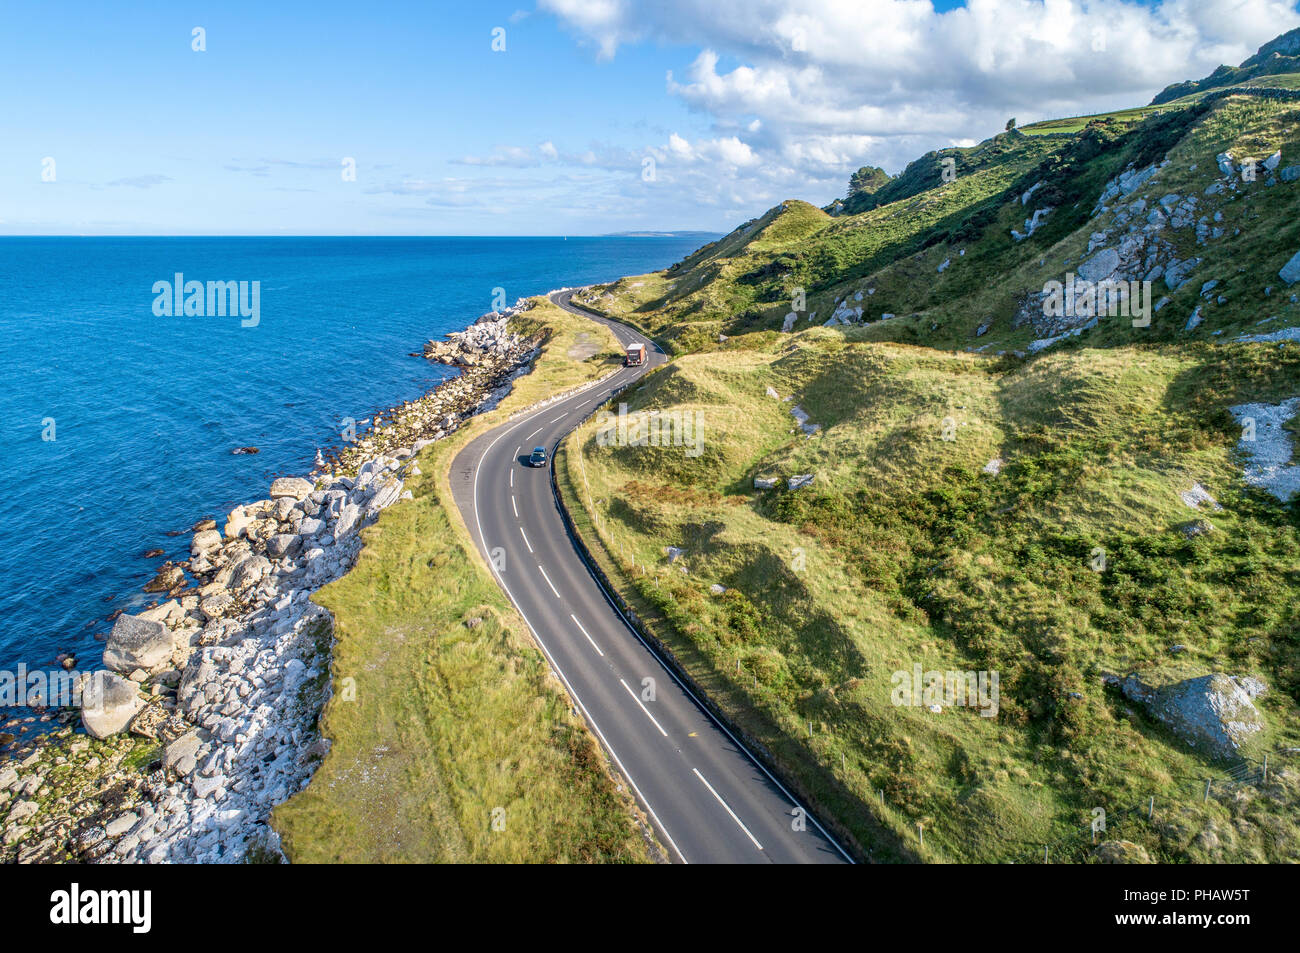 Causeway percorso costiero con vetture, a.k.a. Antrim strada costiera sulla costa orientale dell'Irlanda del Nord, Regno Unito. Foto Stock